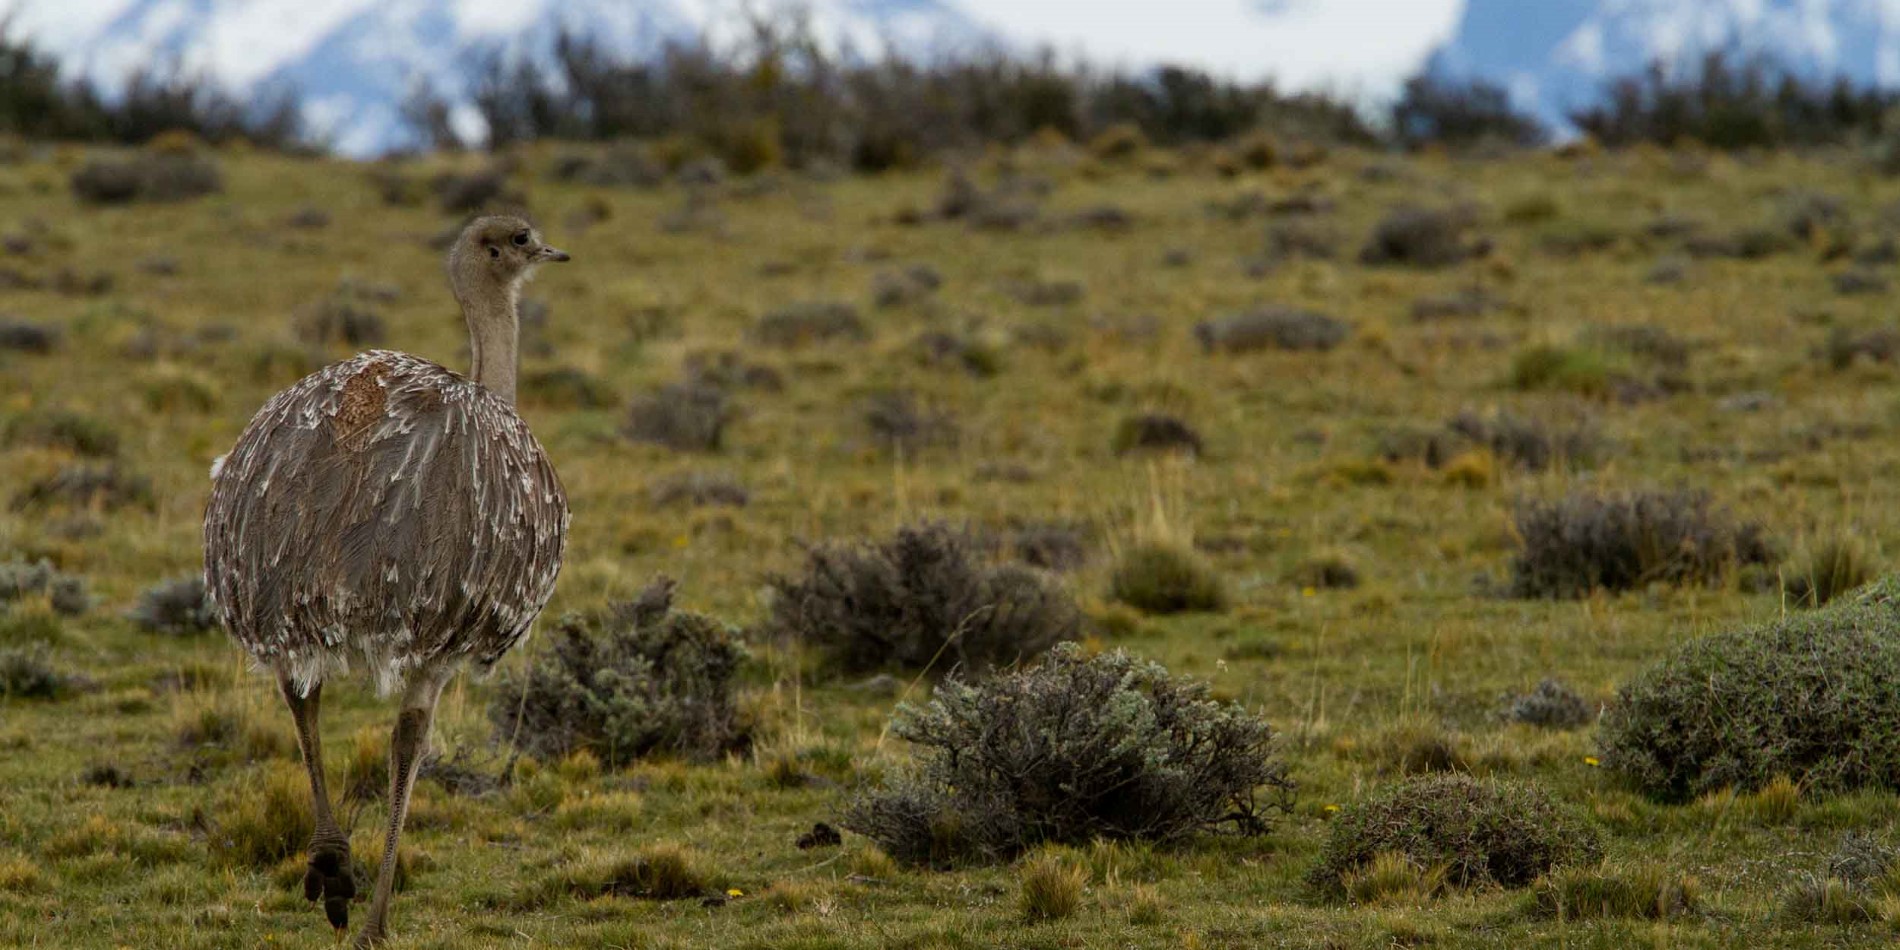 A bird standing on a dry grass field